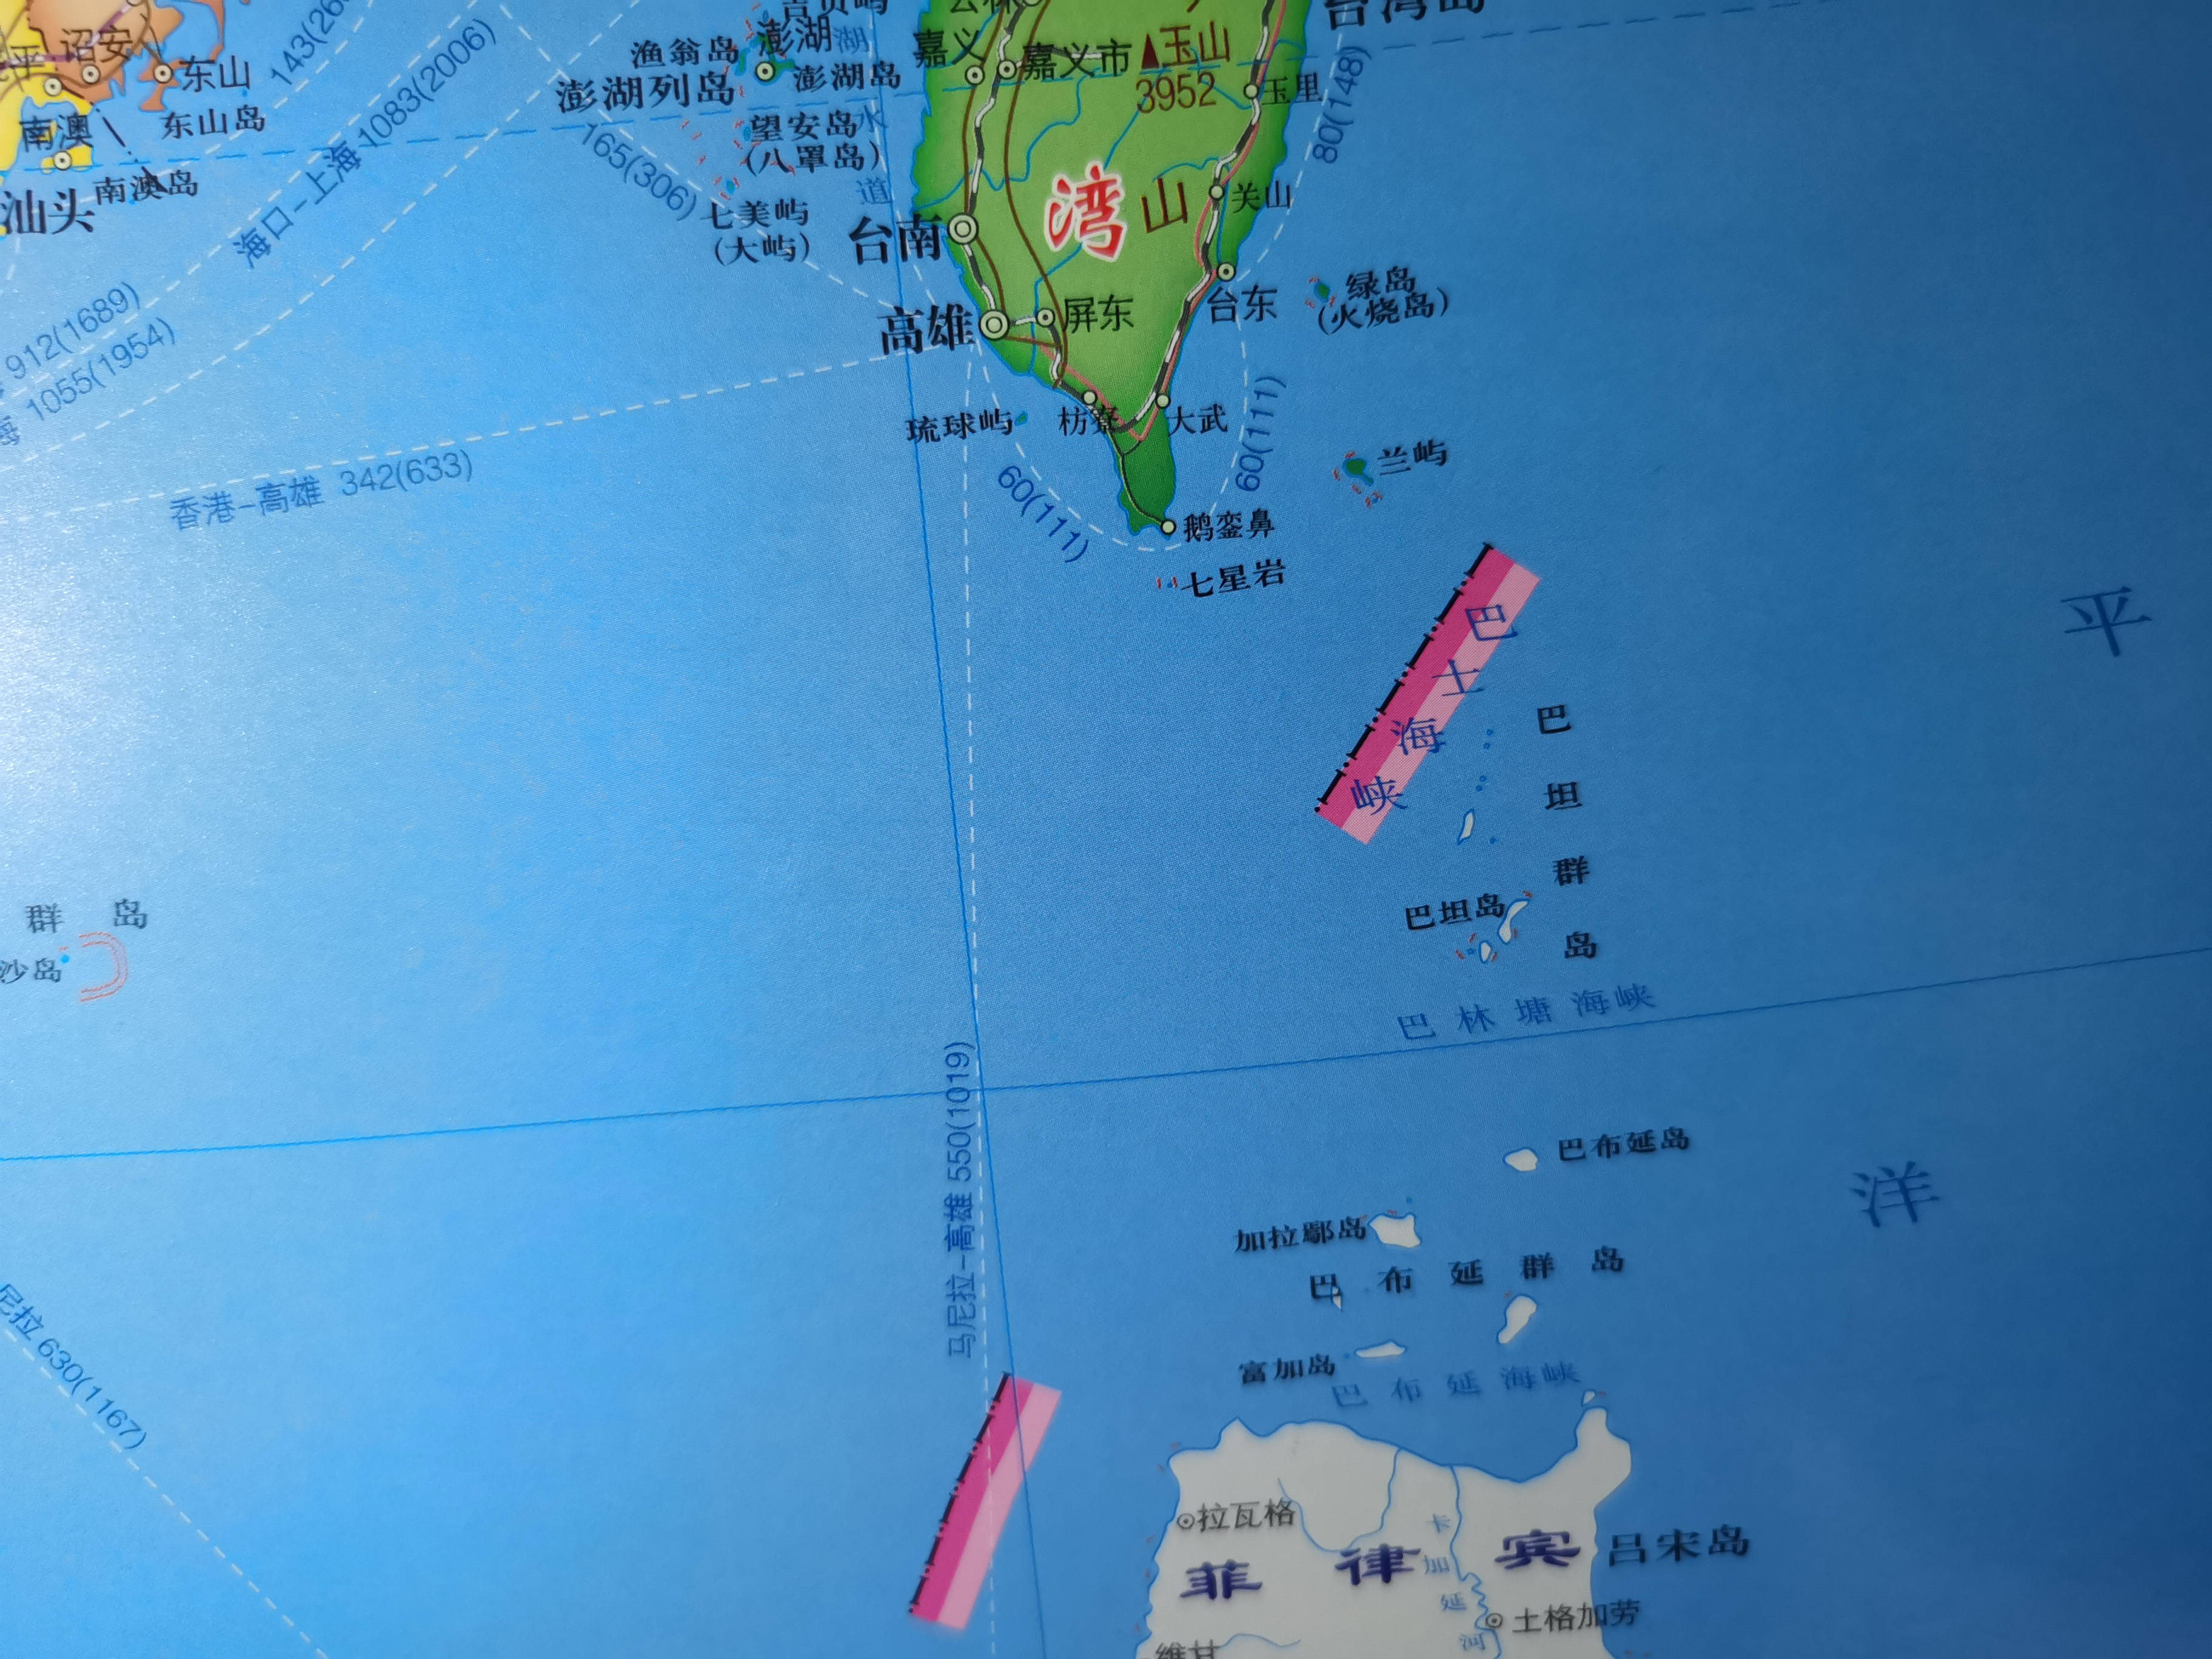 南海十段线其中一段就在这里,该海峡还是沟通印度洋与太平洋的战略要